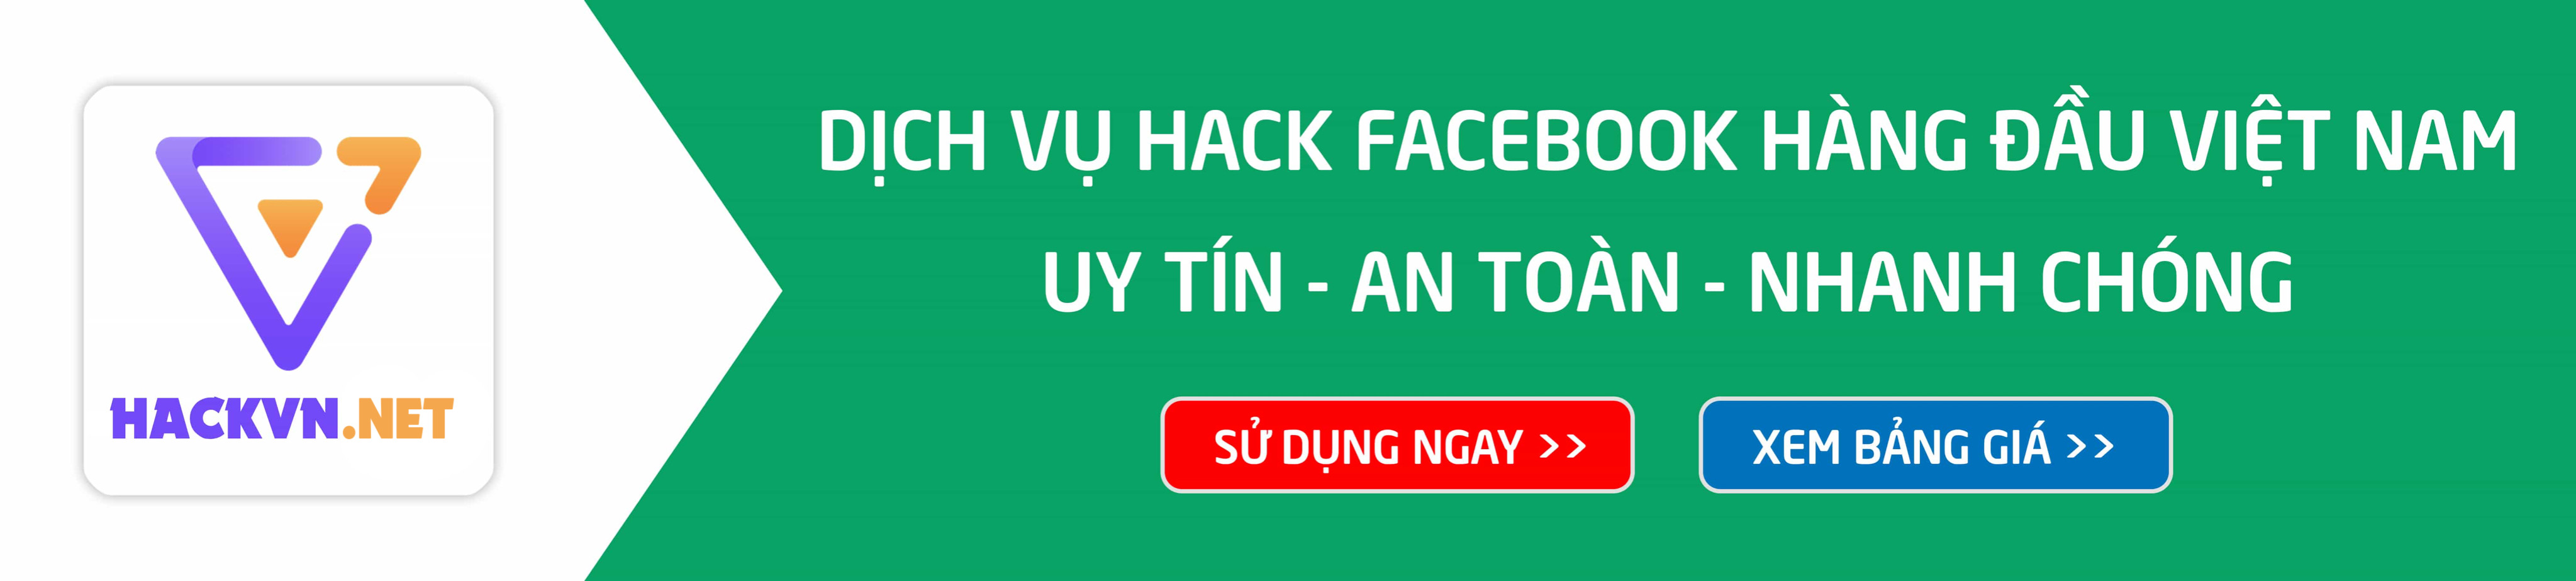 banner hack facebook